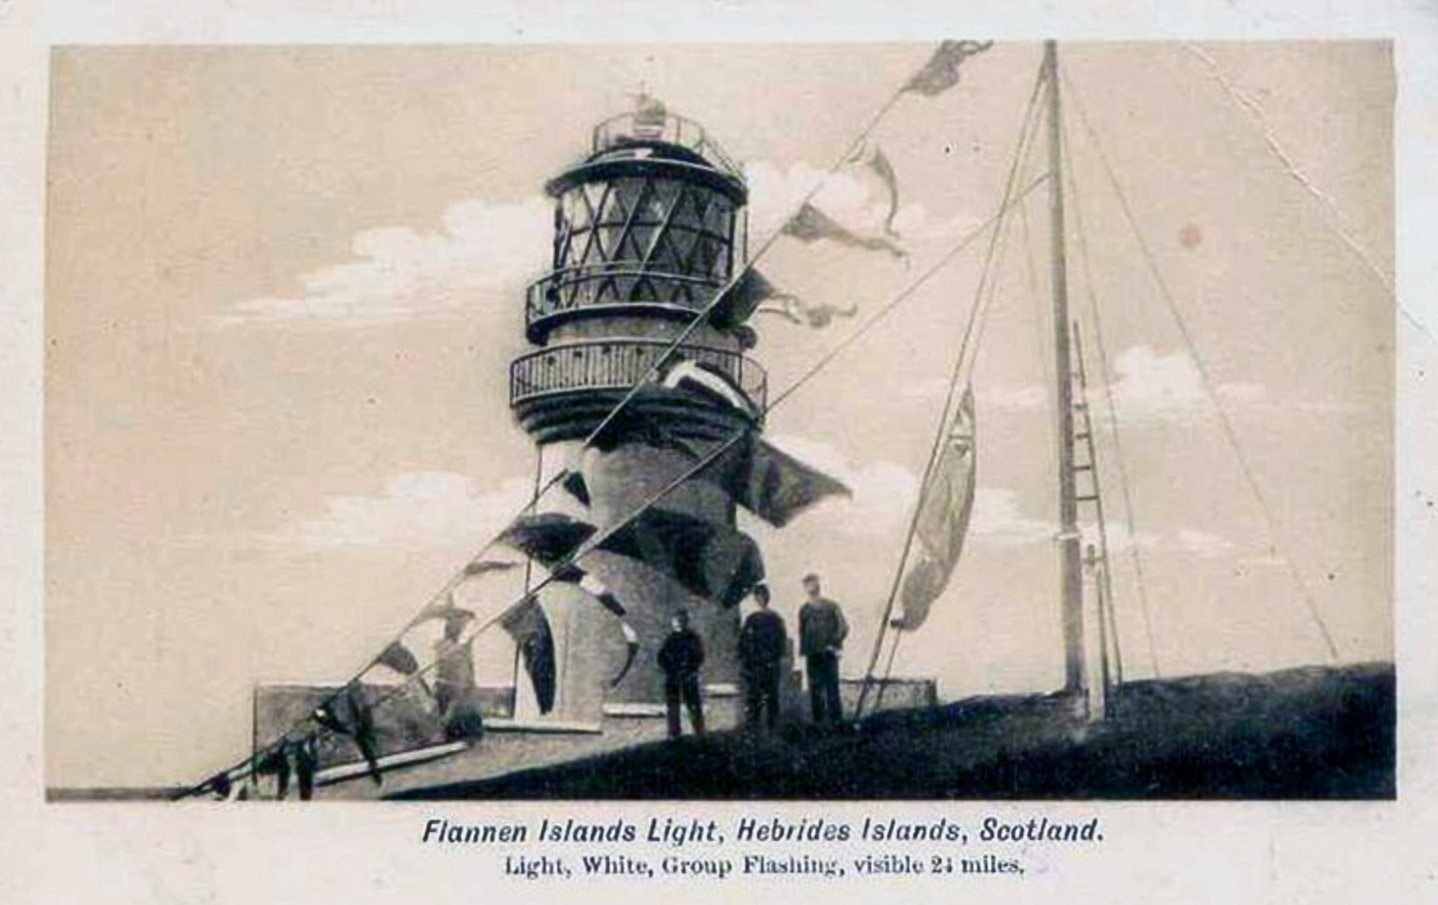 Flannan Isles Lighthouse